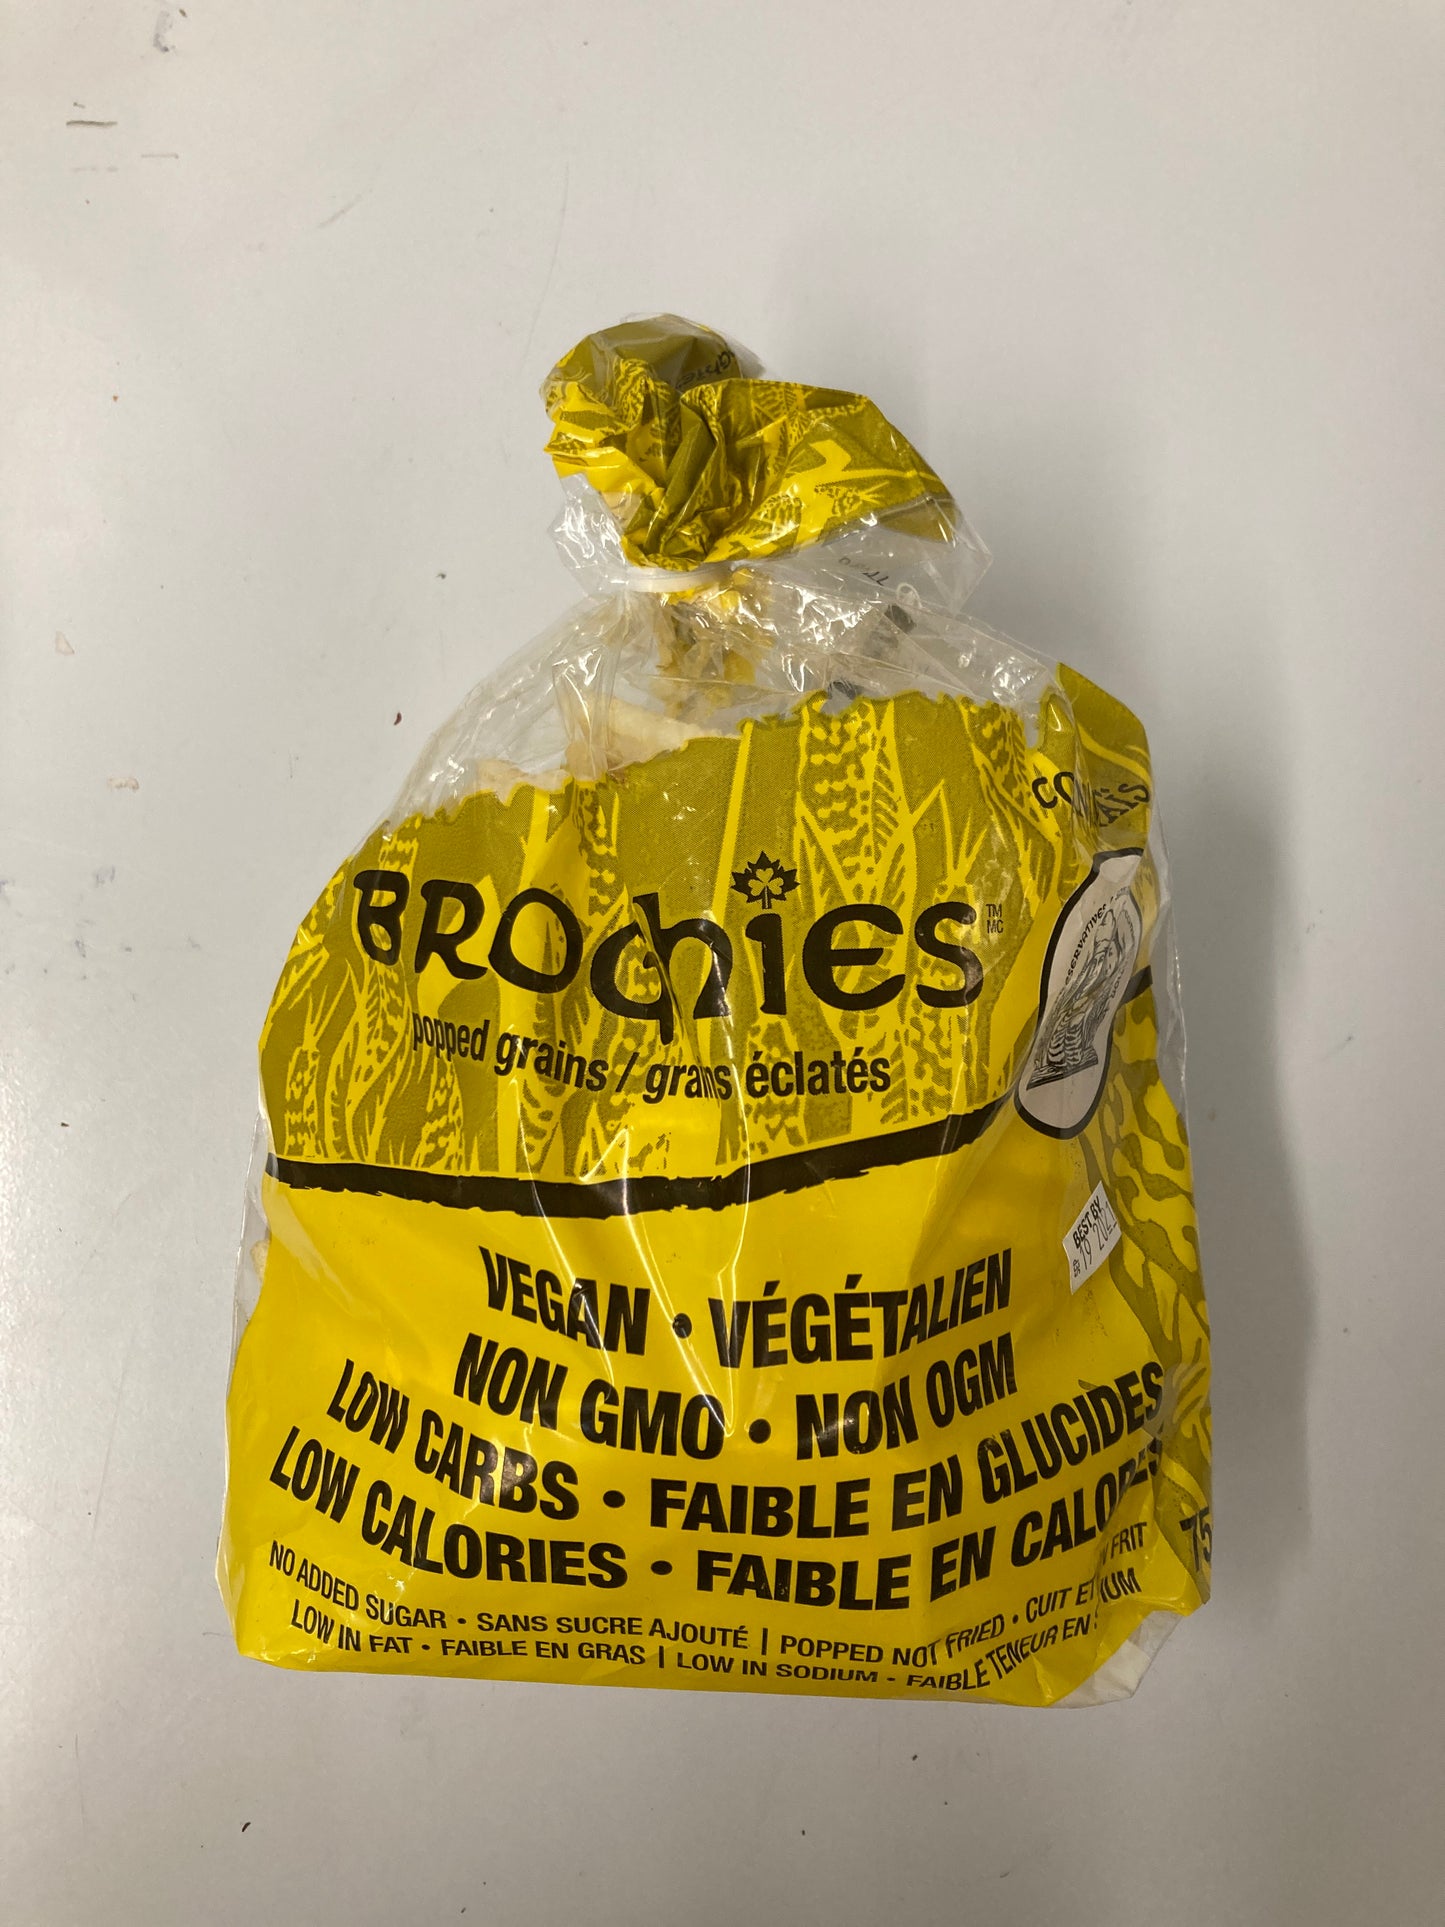 Broghies Vegan Popped Grains